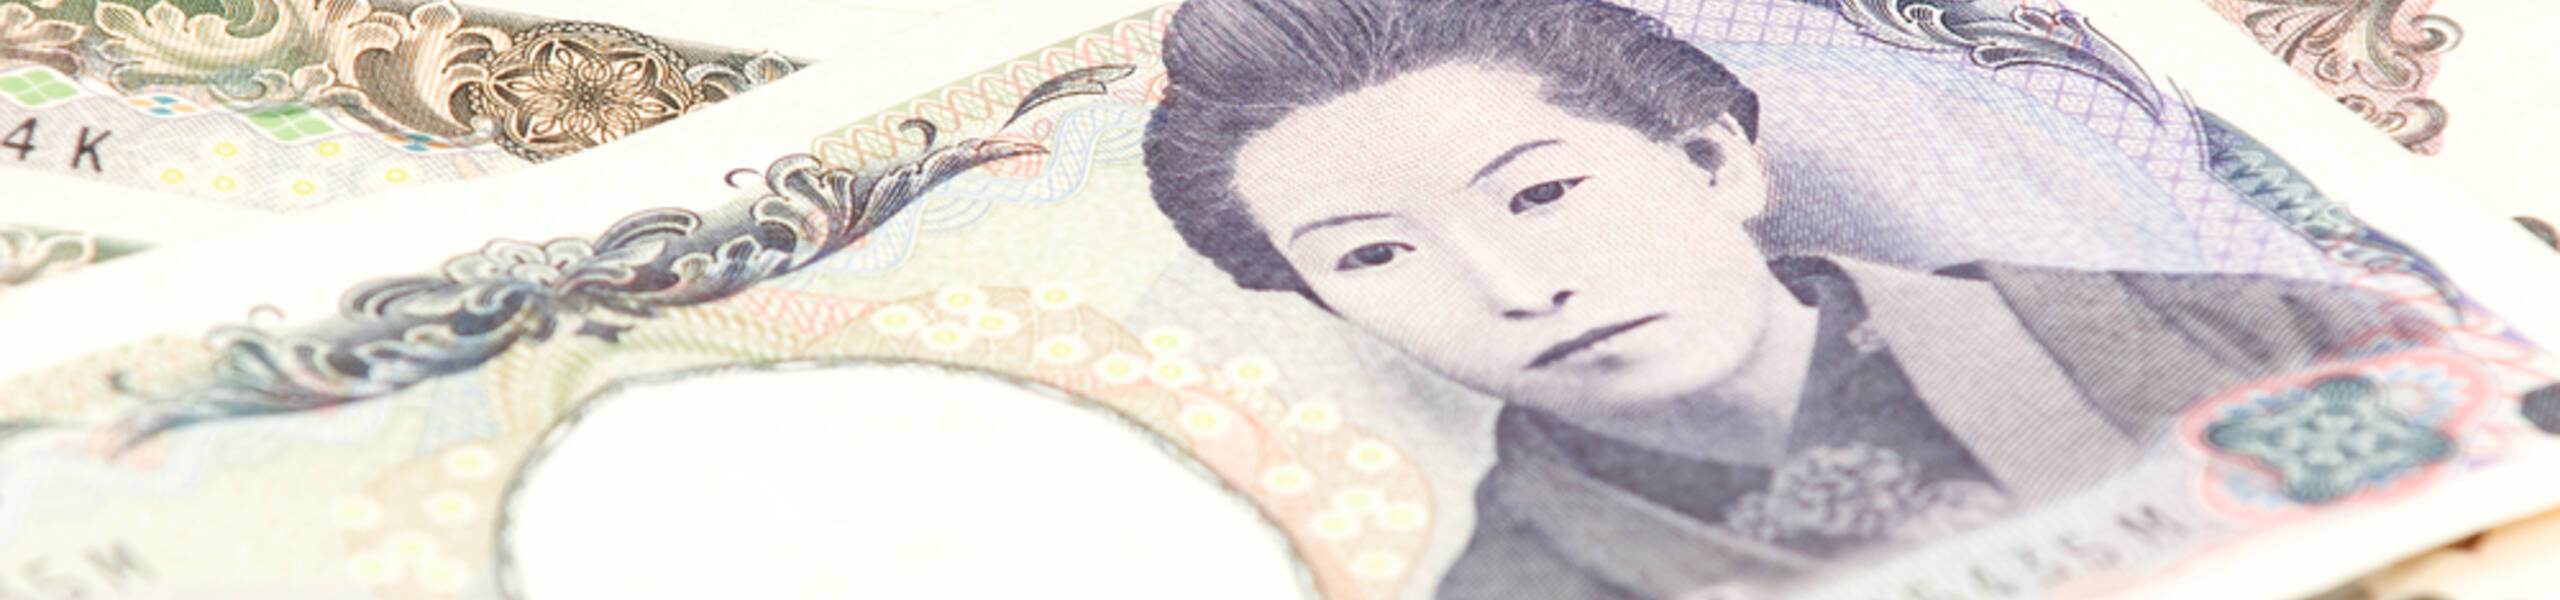 أول اجتماع لمحافظ البنك المركزي الياباني، كيف نرى المشهد والتوقعات؟! 